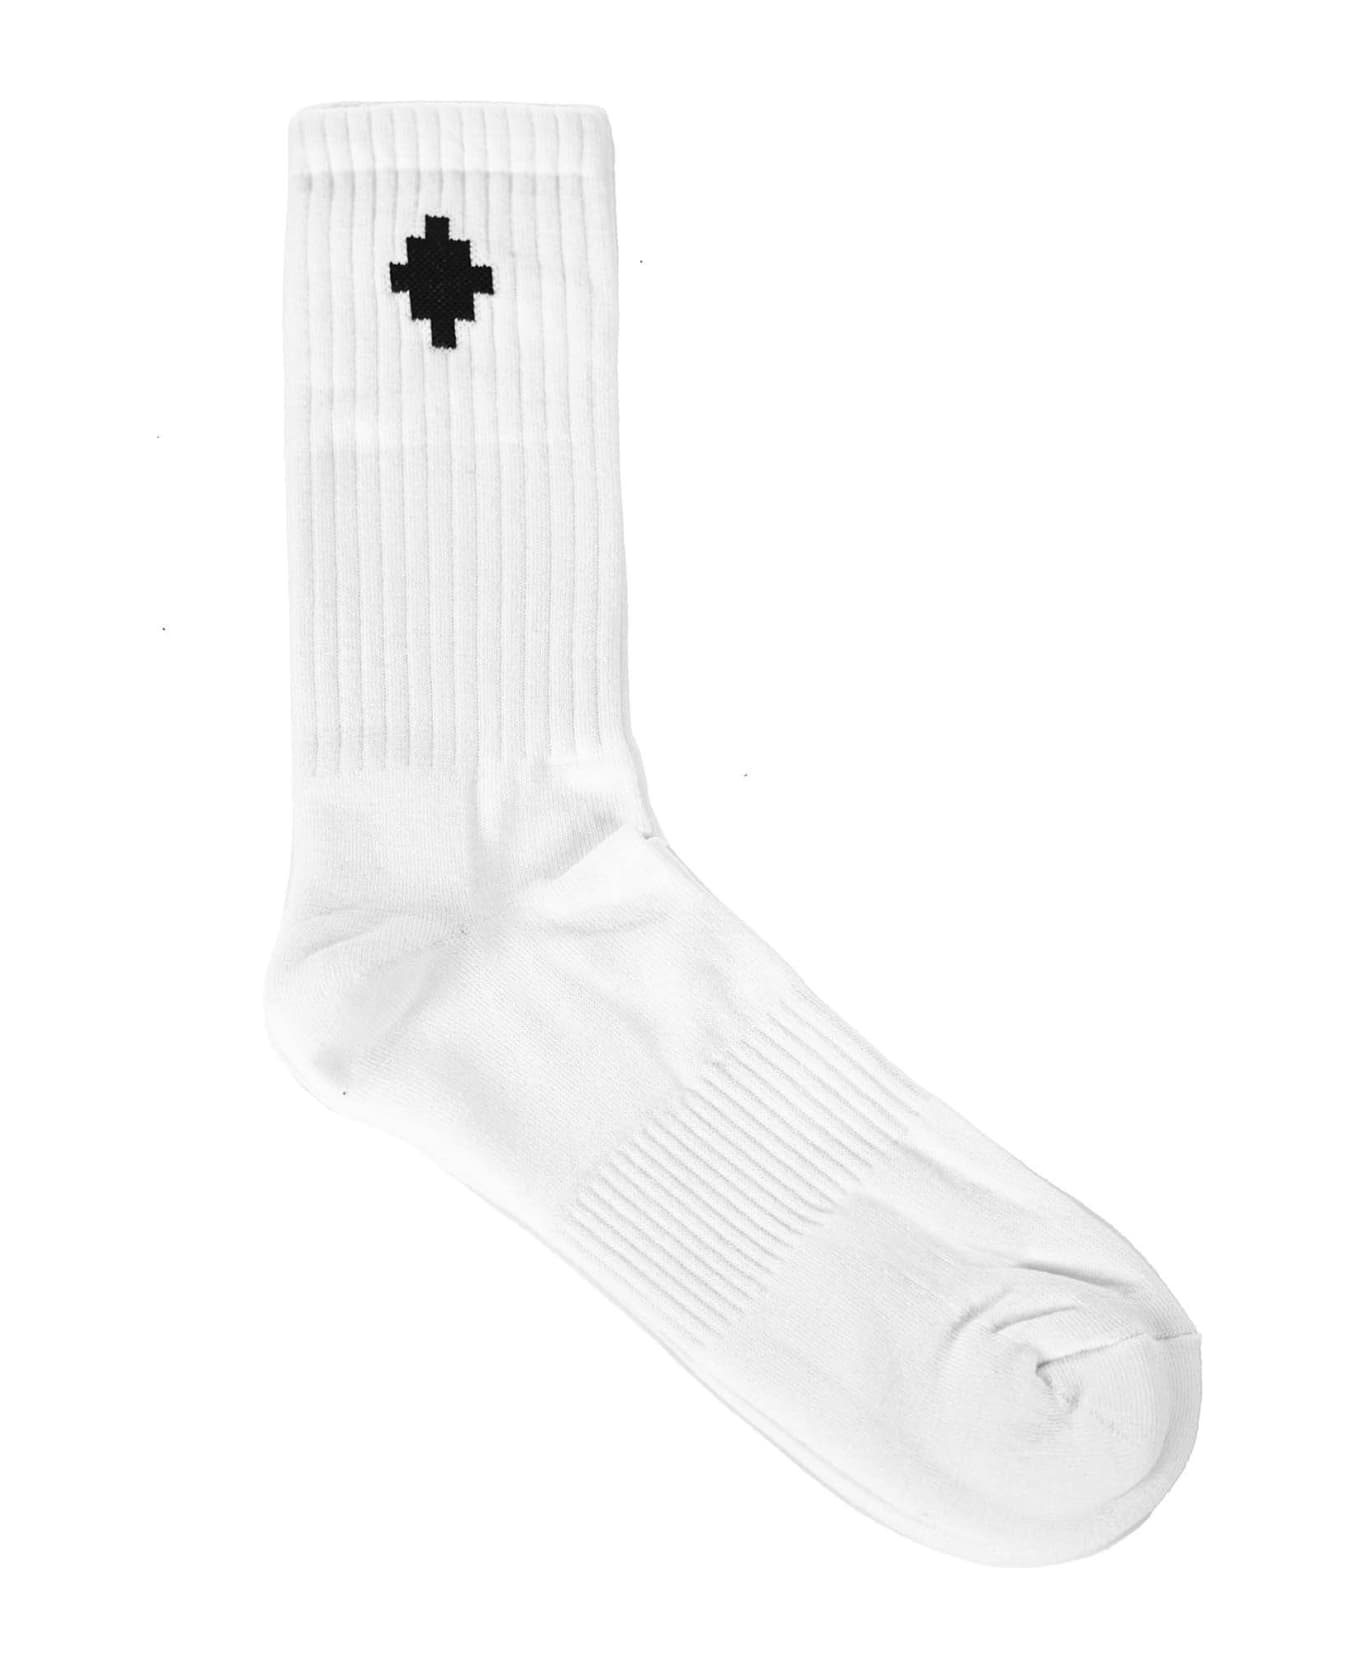 Marcelo Burlon Cross Socks - Bianco nero